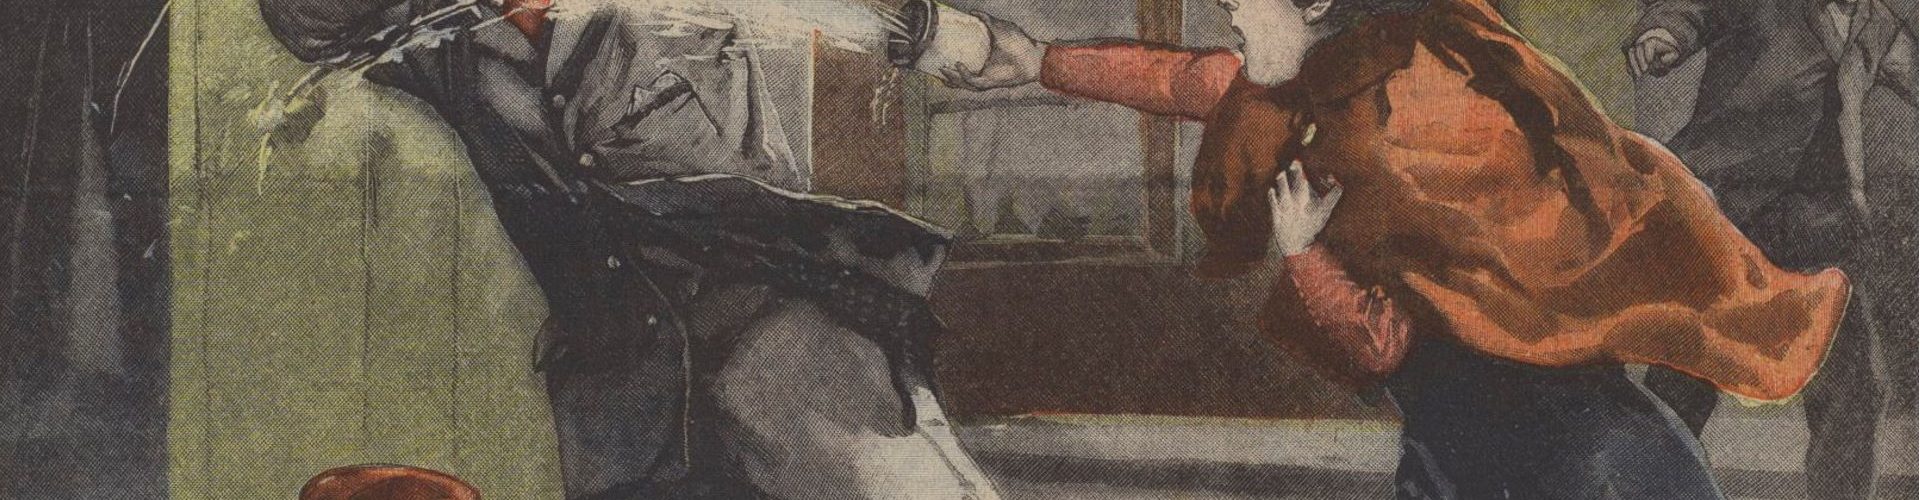 Atak kwasem na ilustracji prasowej z końca XIX wieku.